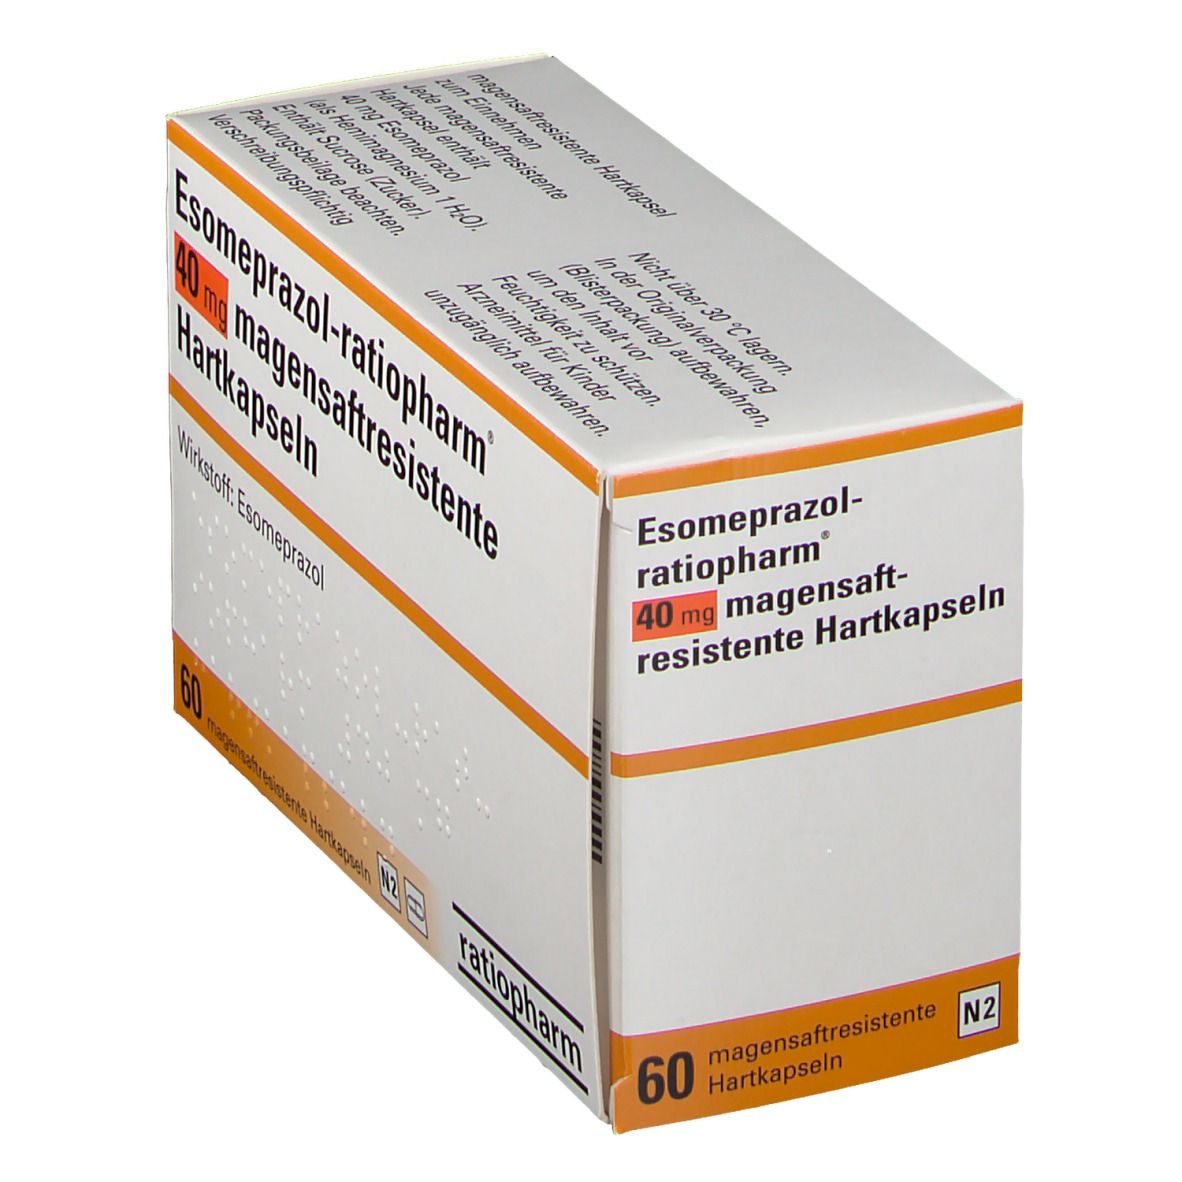 Esomeprazol-ratiopharm® 40 mg